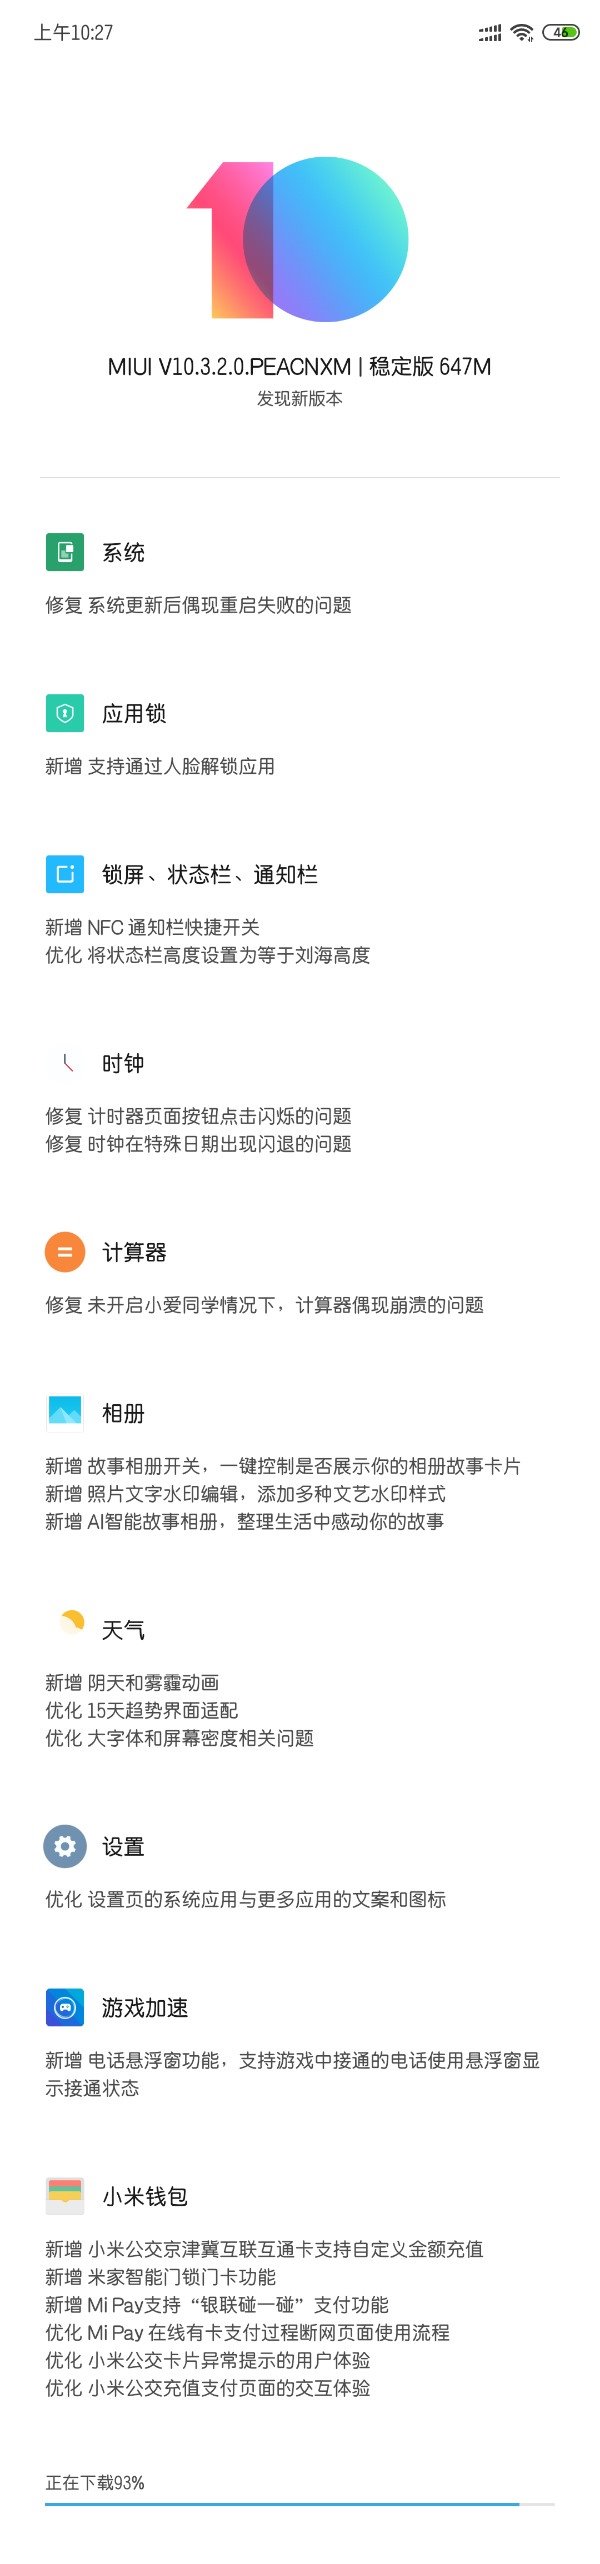 小米8推送MIUI 10.3.2.0更新，新增人脸解锁应用